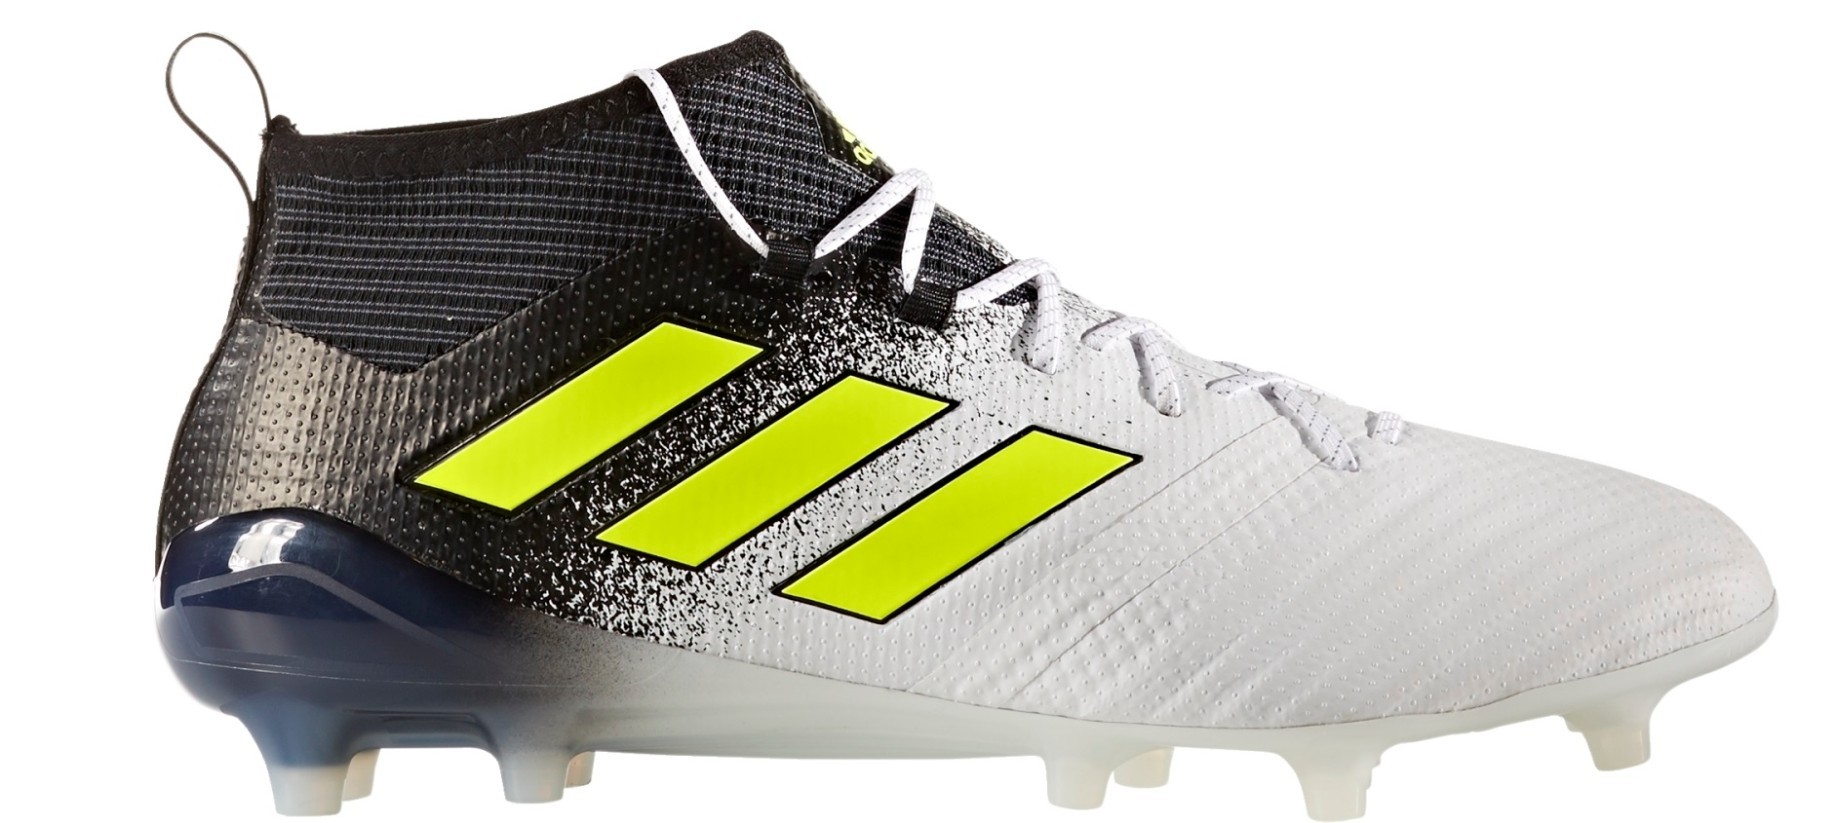 El cuarto consumidor sorpresa Botas de Fútbol Adidas Ace 17.1 FG Tormenta de Polvo Pack colore blanco  negro - Adidas - SportIT.com